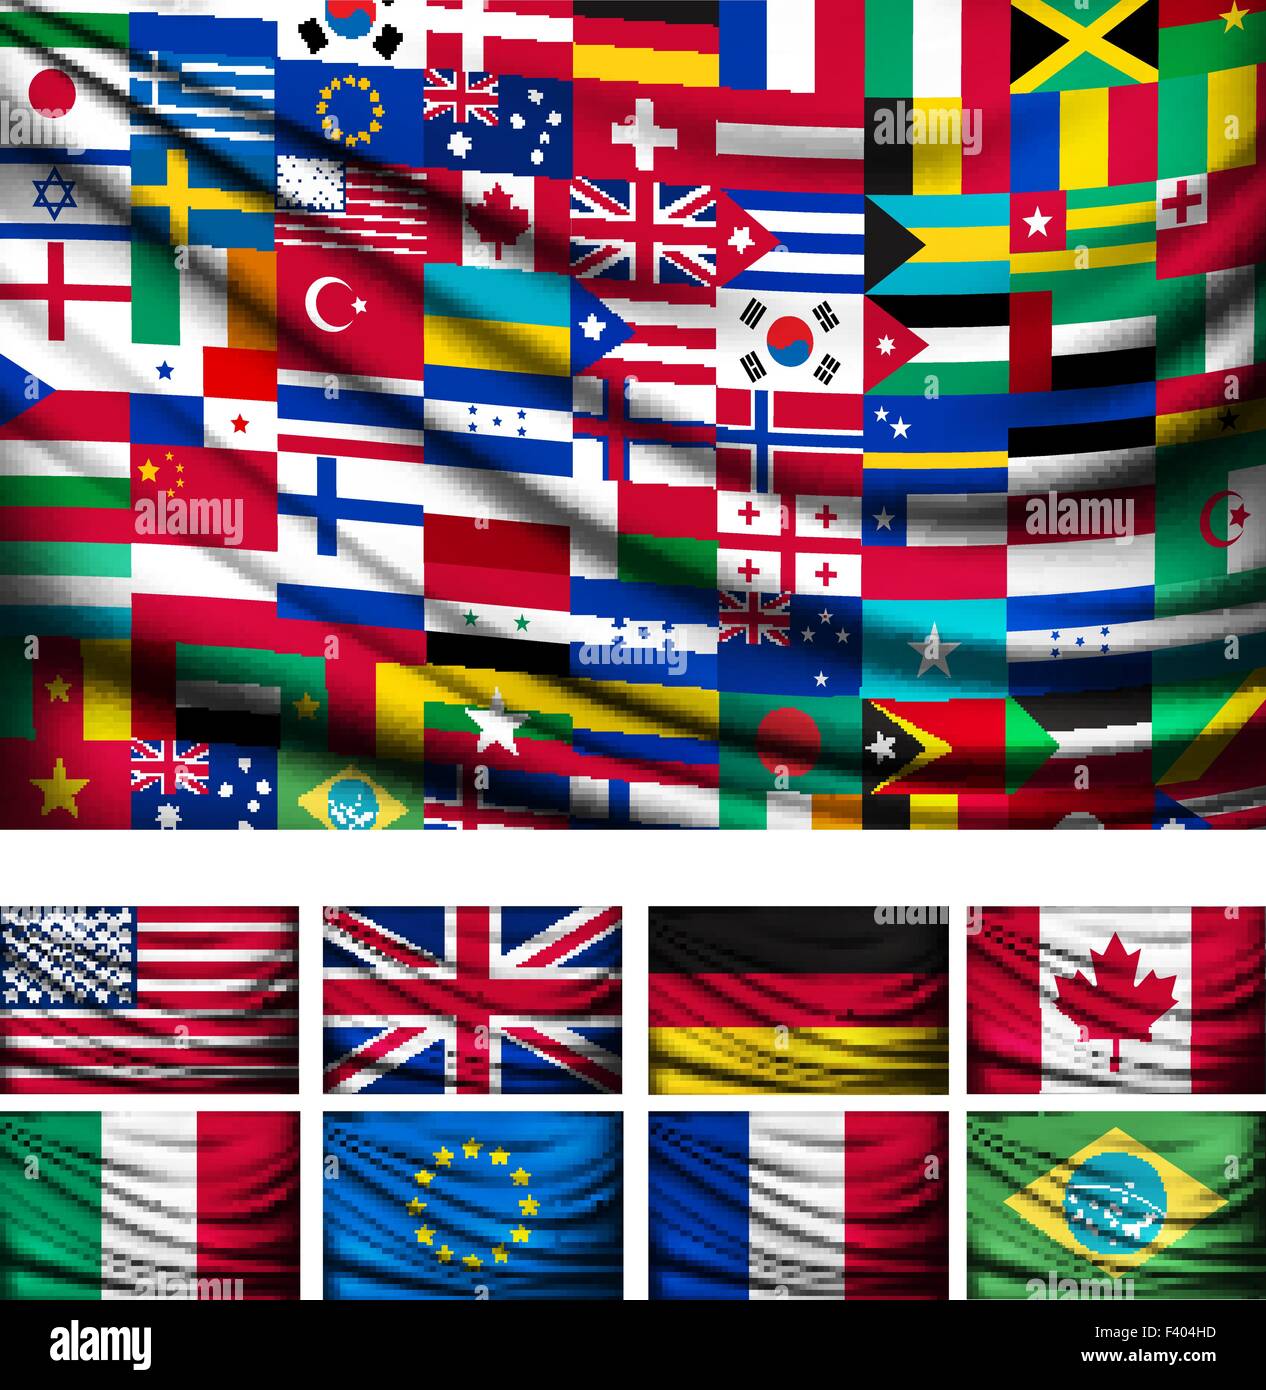 Grand fond drapeau fait de drapeaux de pays du monde. Vecteur. Illustration de Vecteur